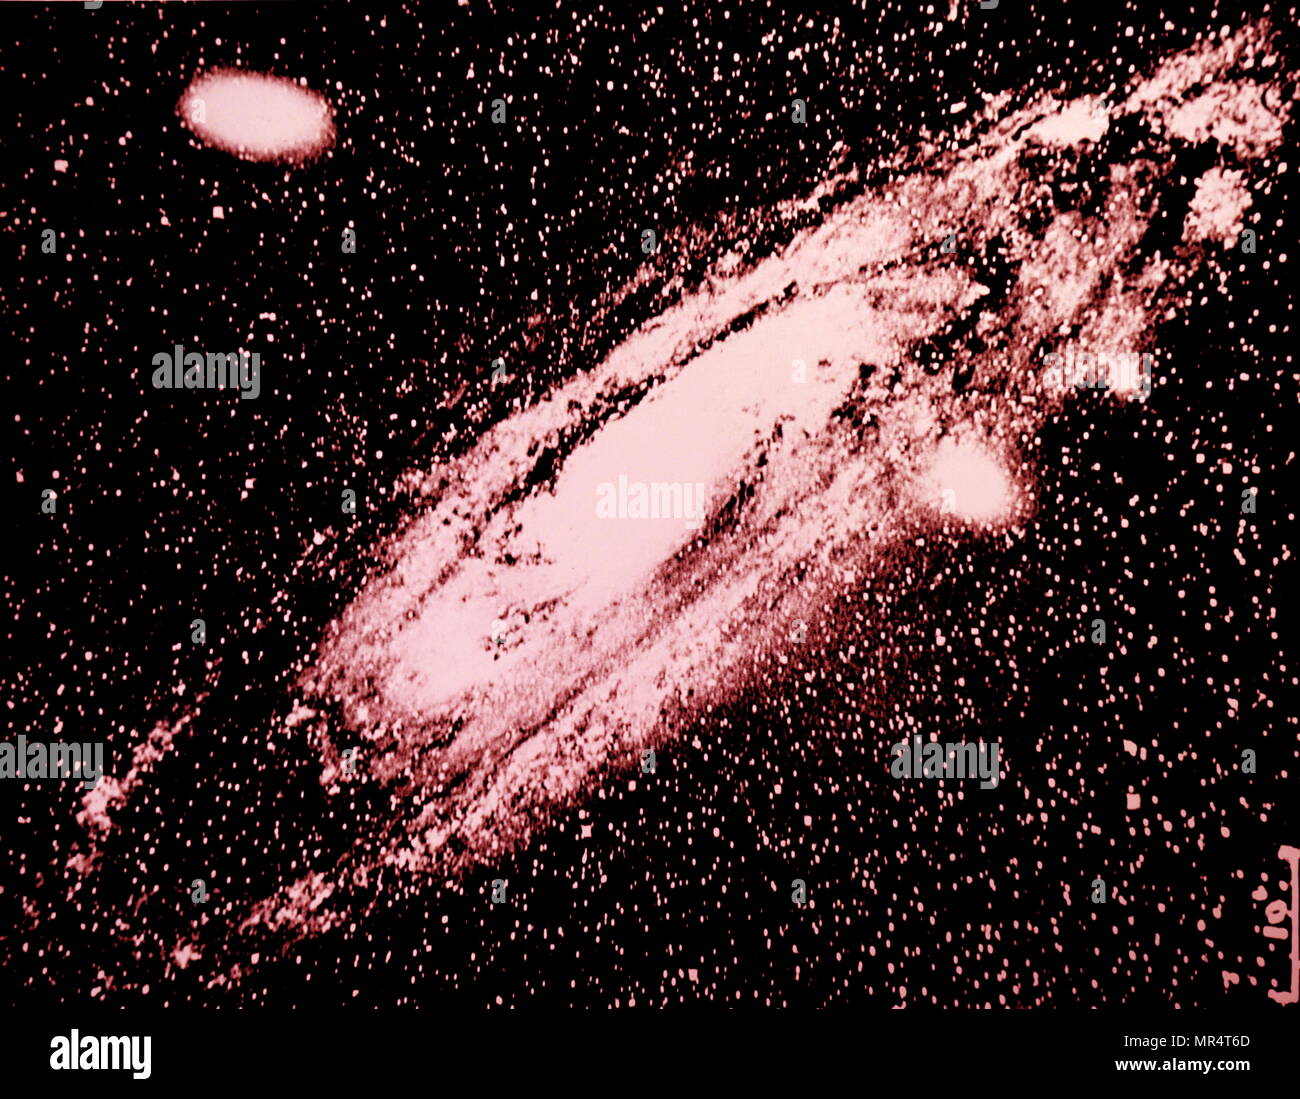 Fotografía de una galaxia espiral en la Constelación de Andrómeda. Fotografiado en el Observatorio Yerkes de Chicago. Fecha siglo xx Foto de stock